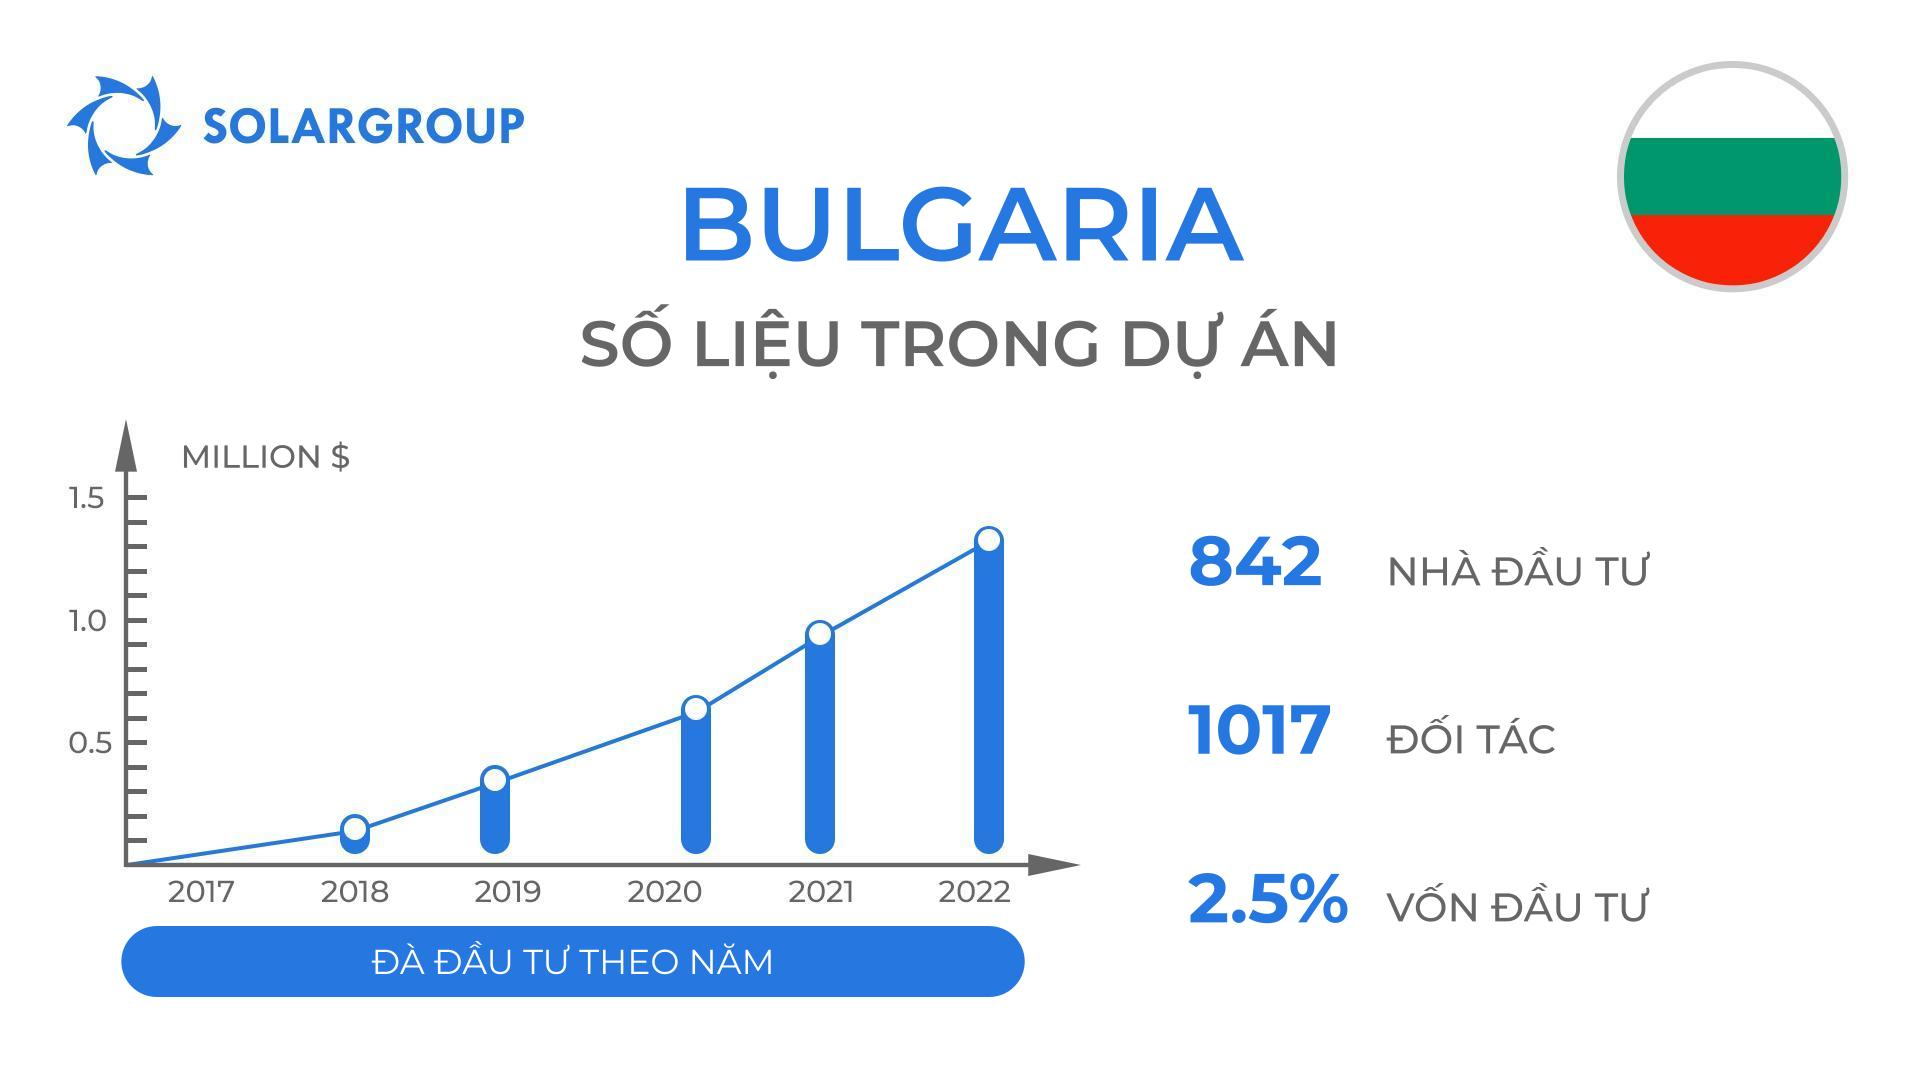 Quốc gia trong dự án "Động cơ của Duyunov": Bungari